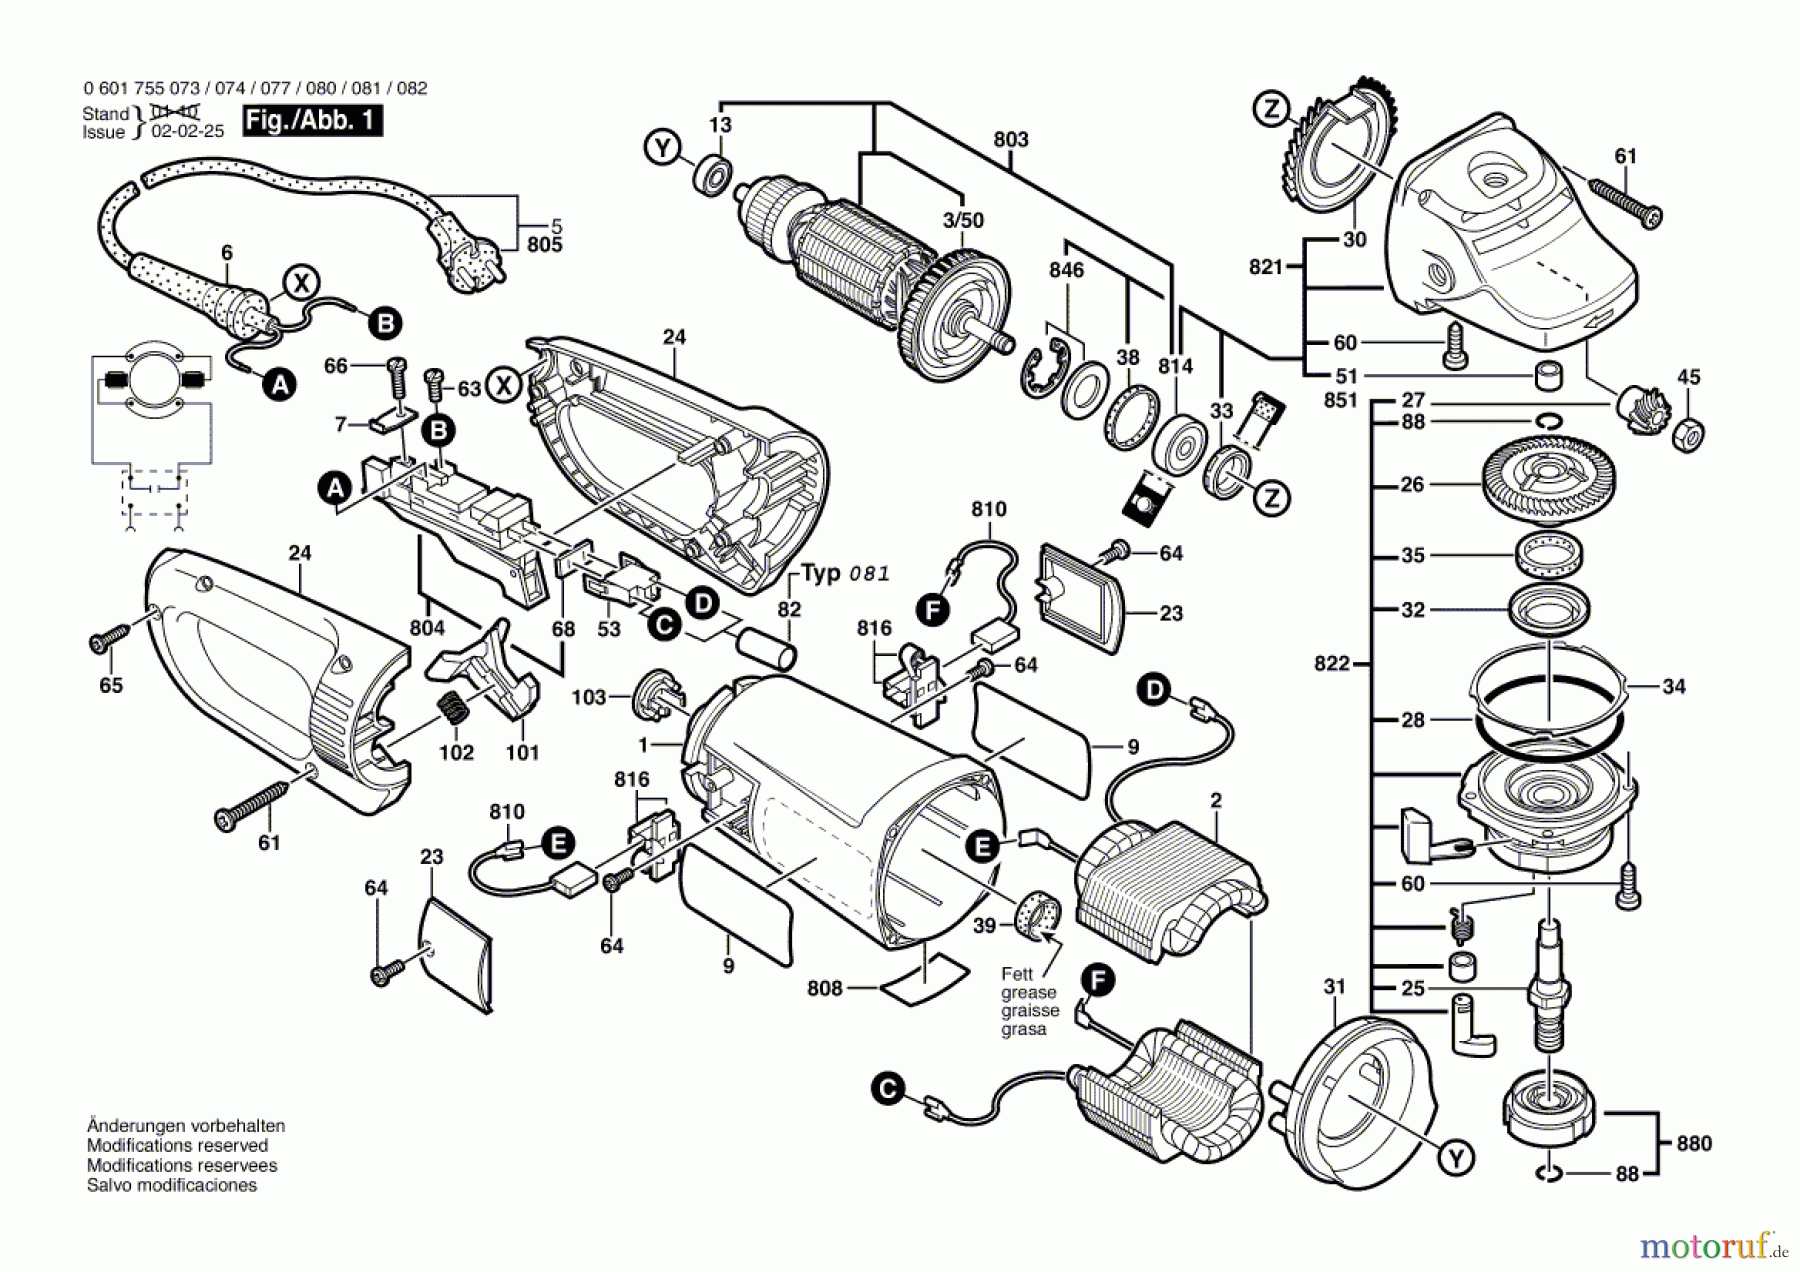  Bosch Werkzeug Winkelschleifer GWS 25-180 S Seite 1